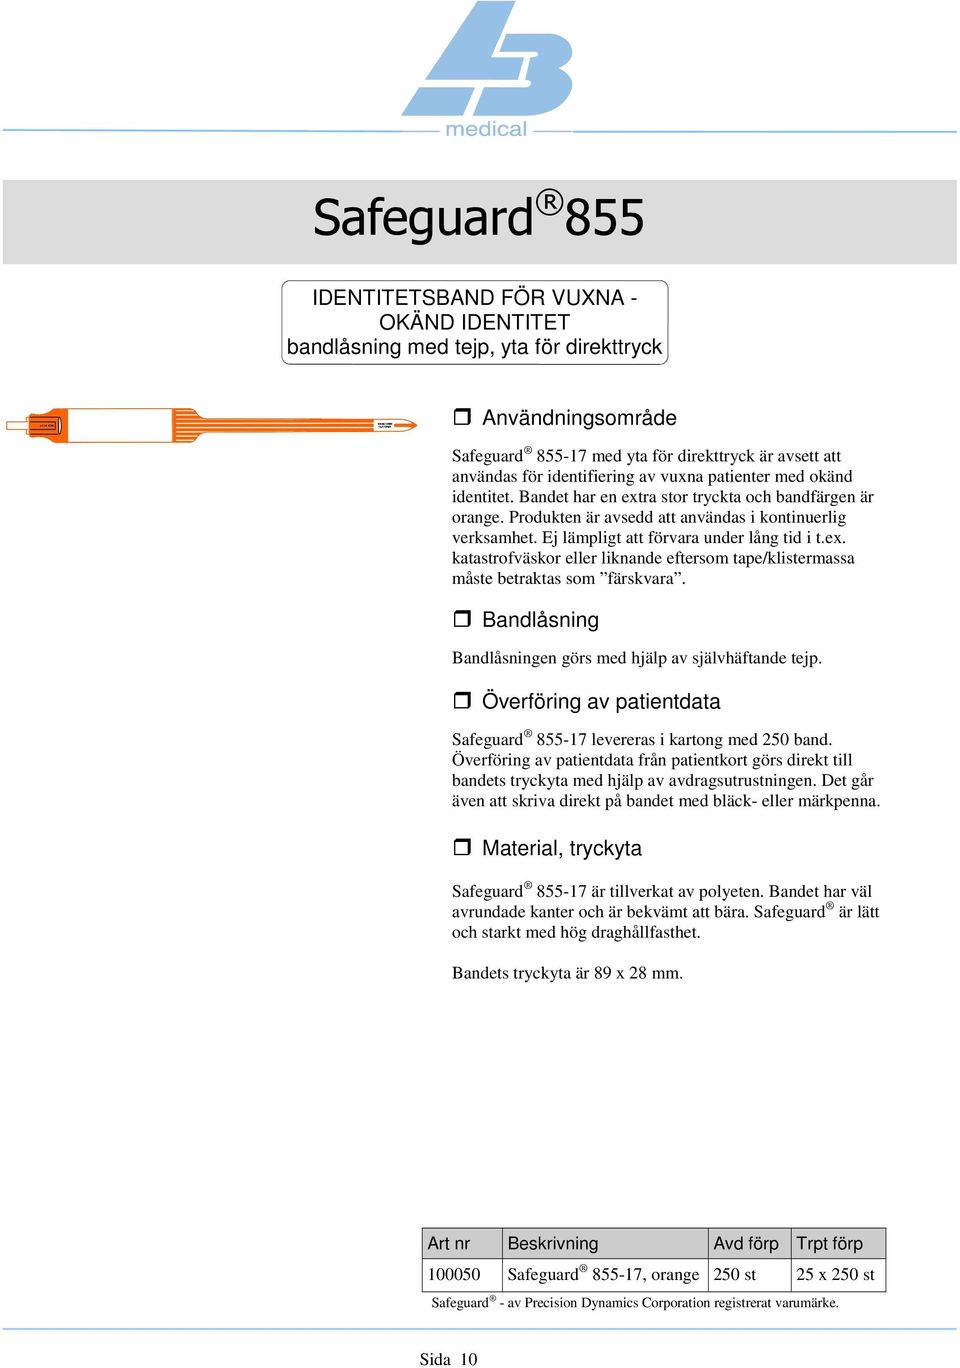 Bandlåsningen görs med hjälp av självhäftande tejp. Safeguard 855-17 levereras i kartong med 250 band.